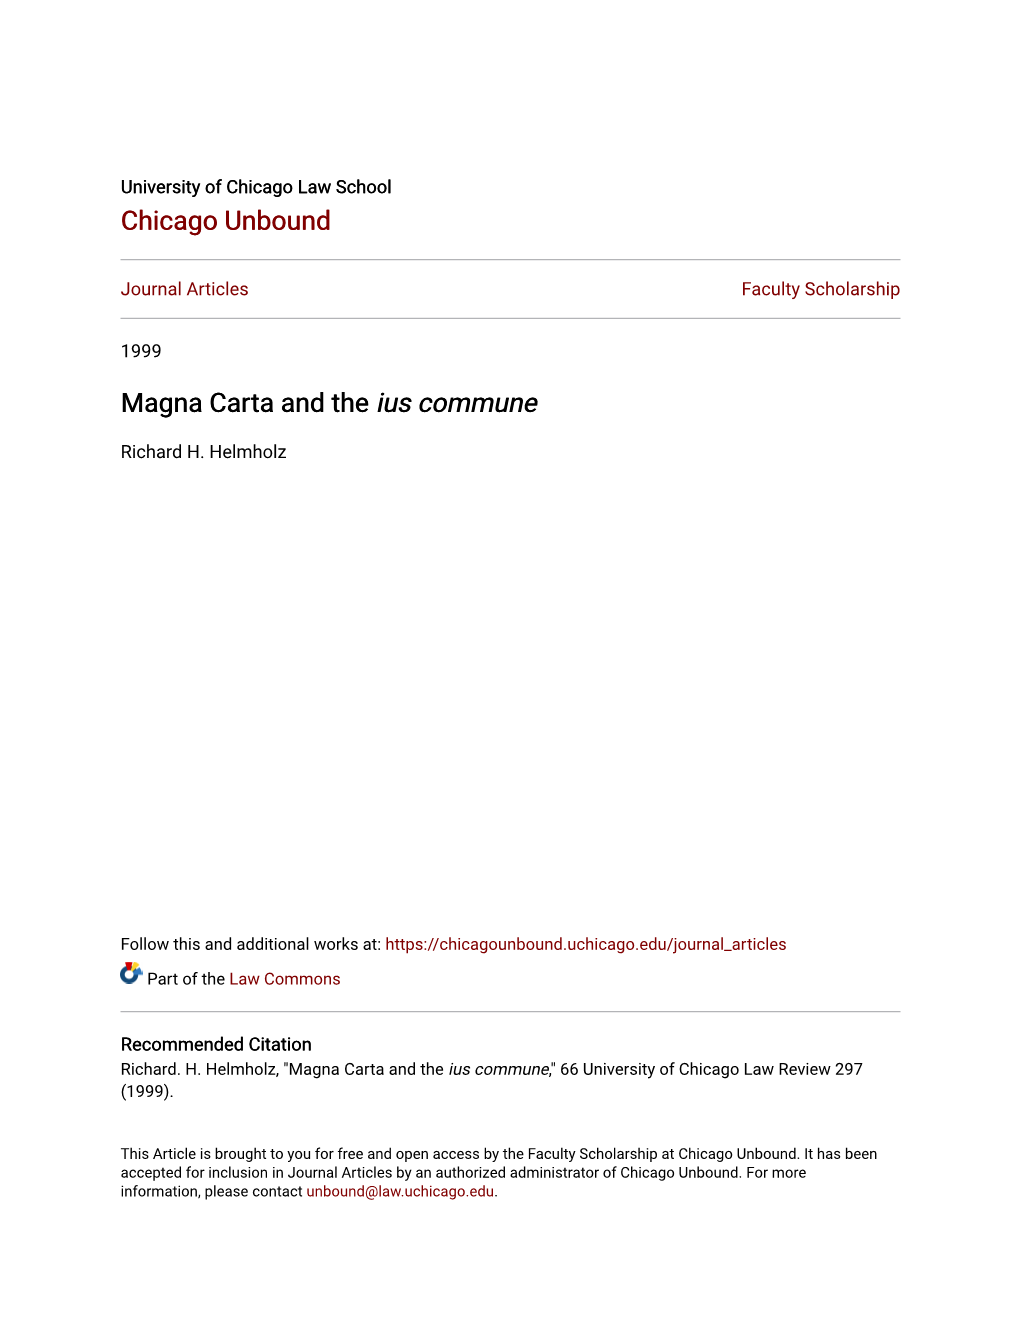 Magna Carta and the Ius Commune